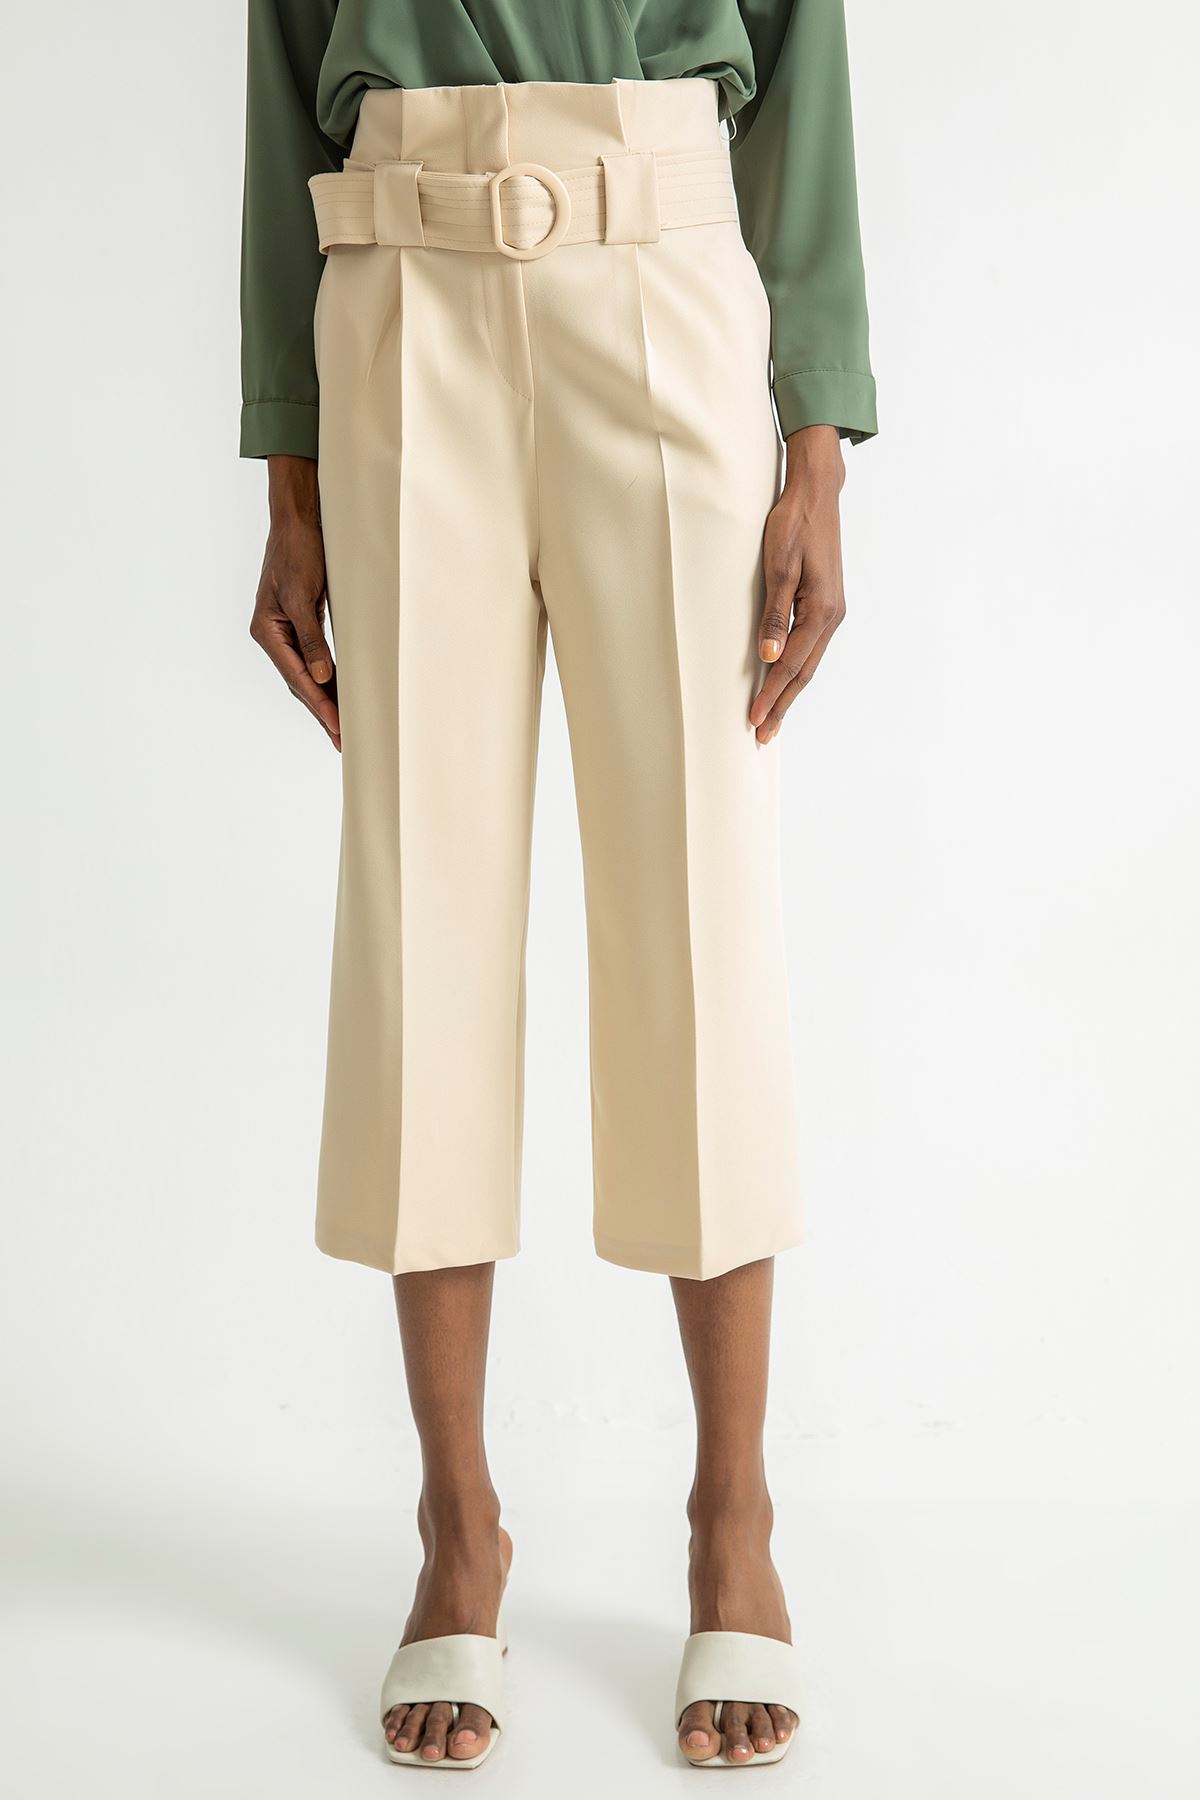 Atlas Fabric 3/4 Short Wide Wide Leg Women'S Trouser - Stone